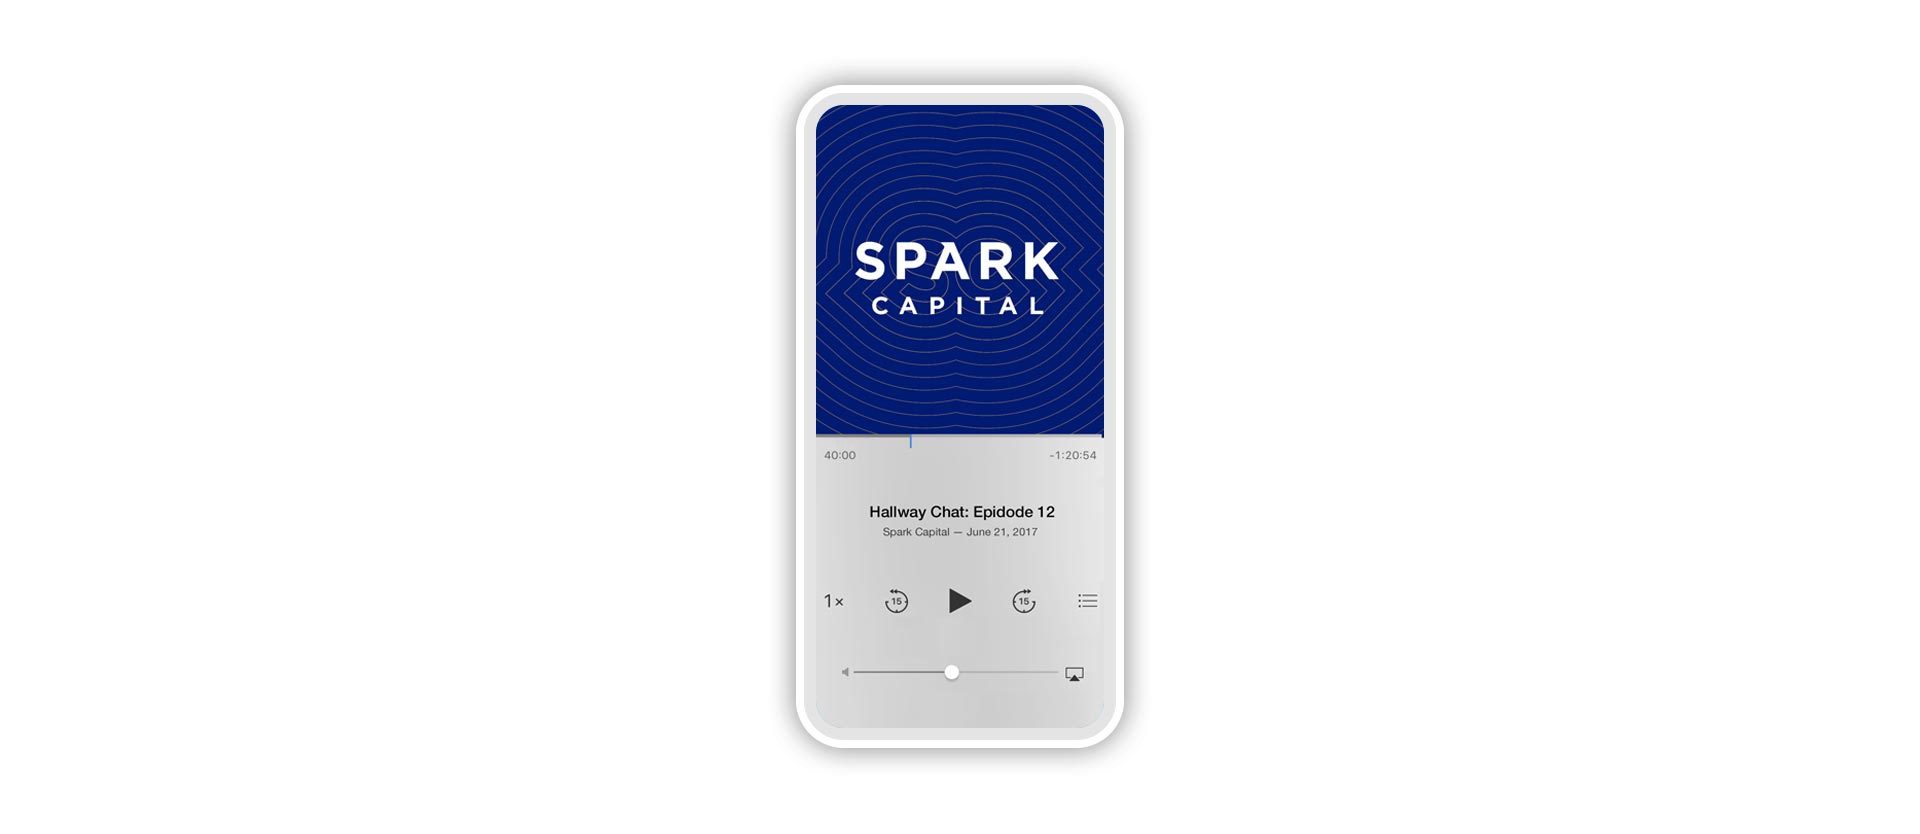 SparkCapital_PodcastPhone_small